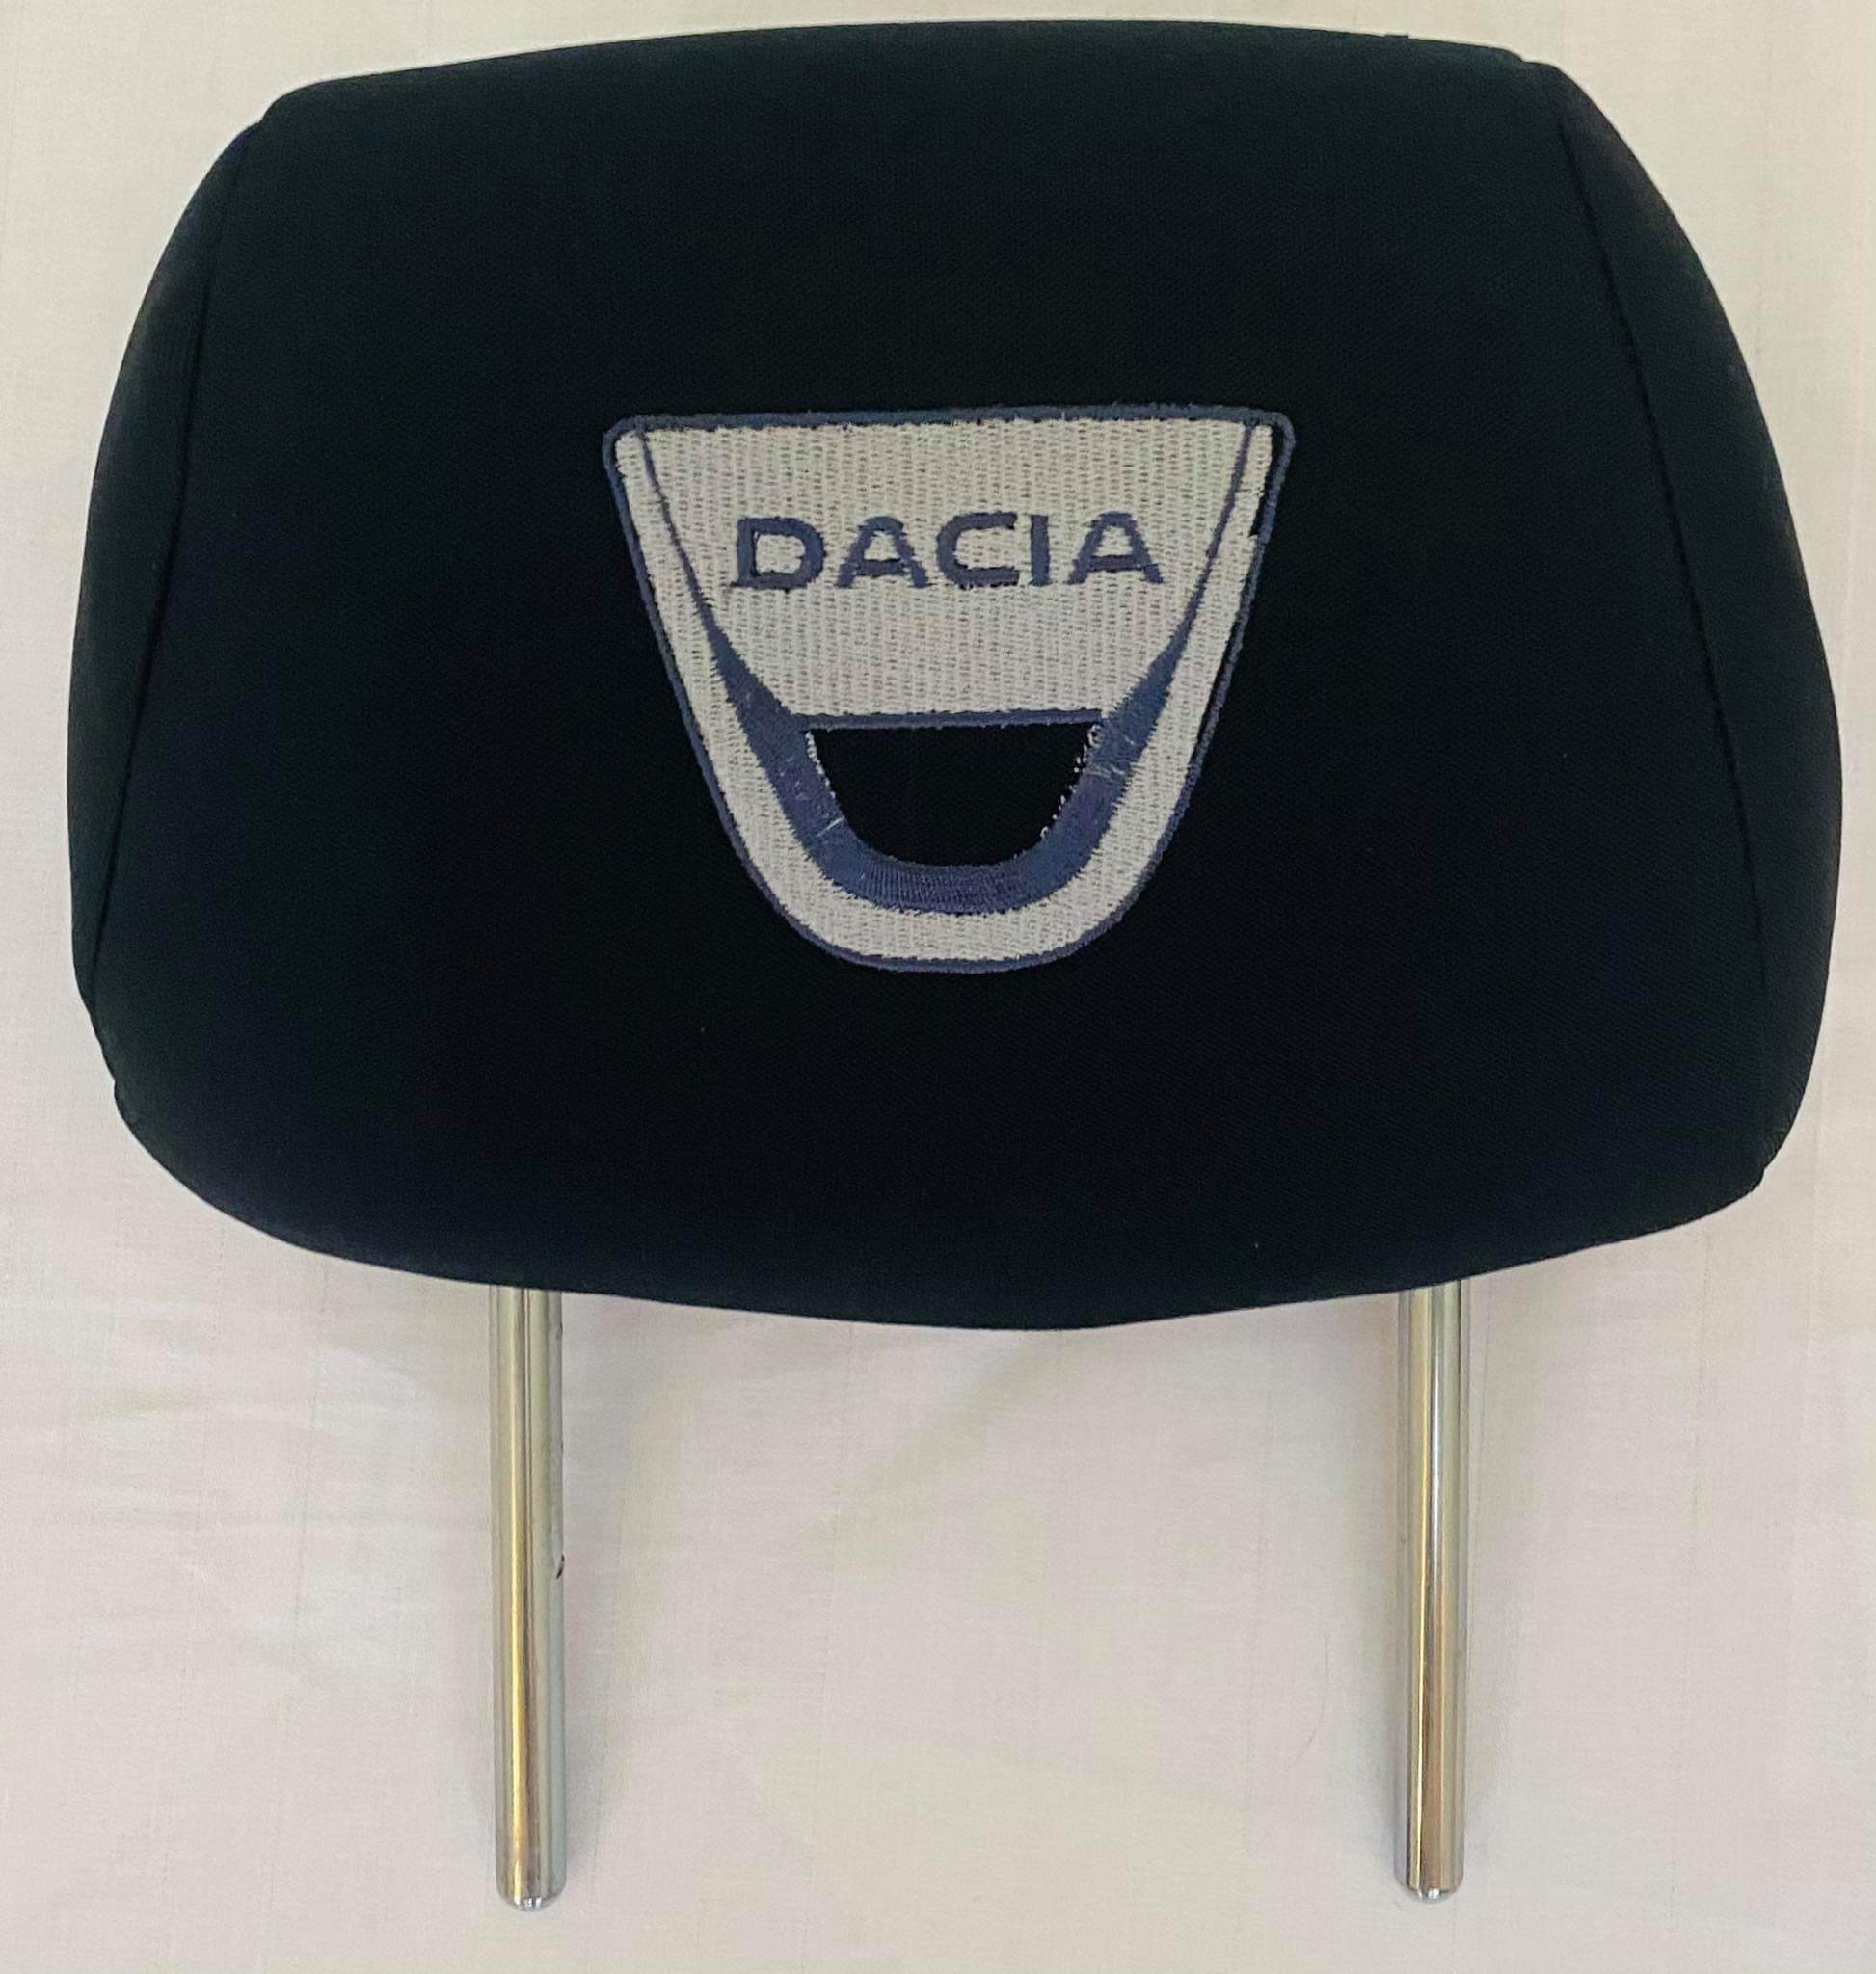 Čierne návleky na opierky hlavy s logom Dacia - 2ks